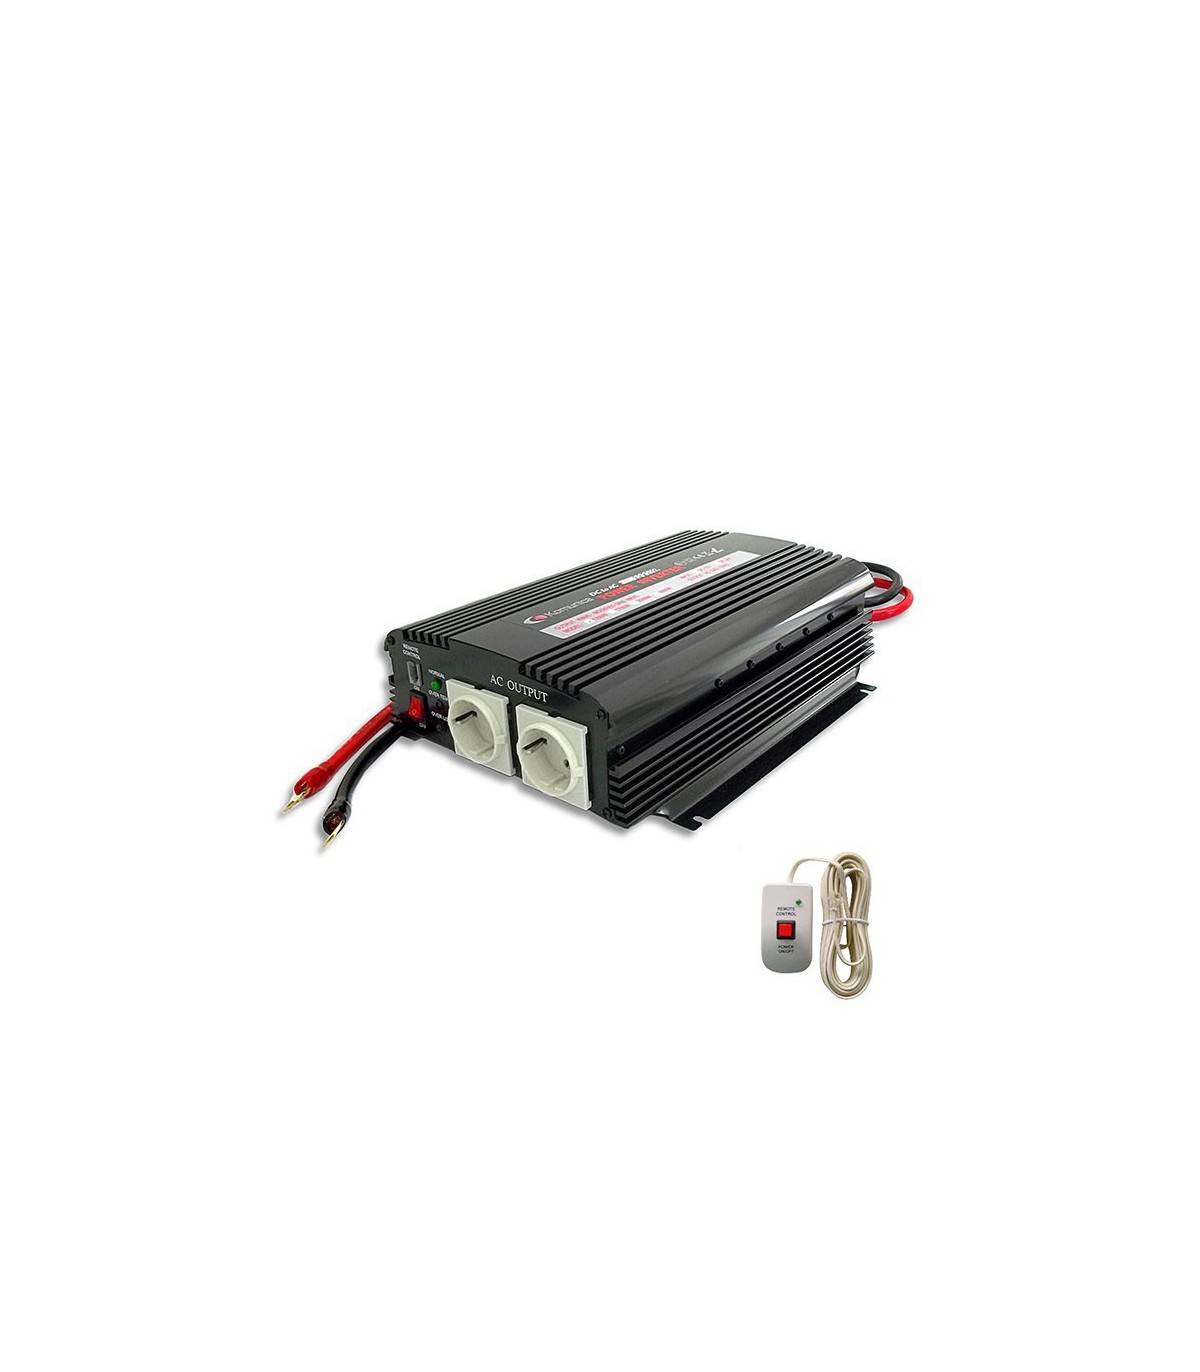 Inverter 1200W, 24V/220V + remote control